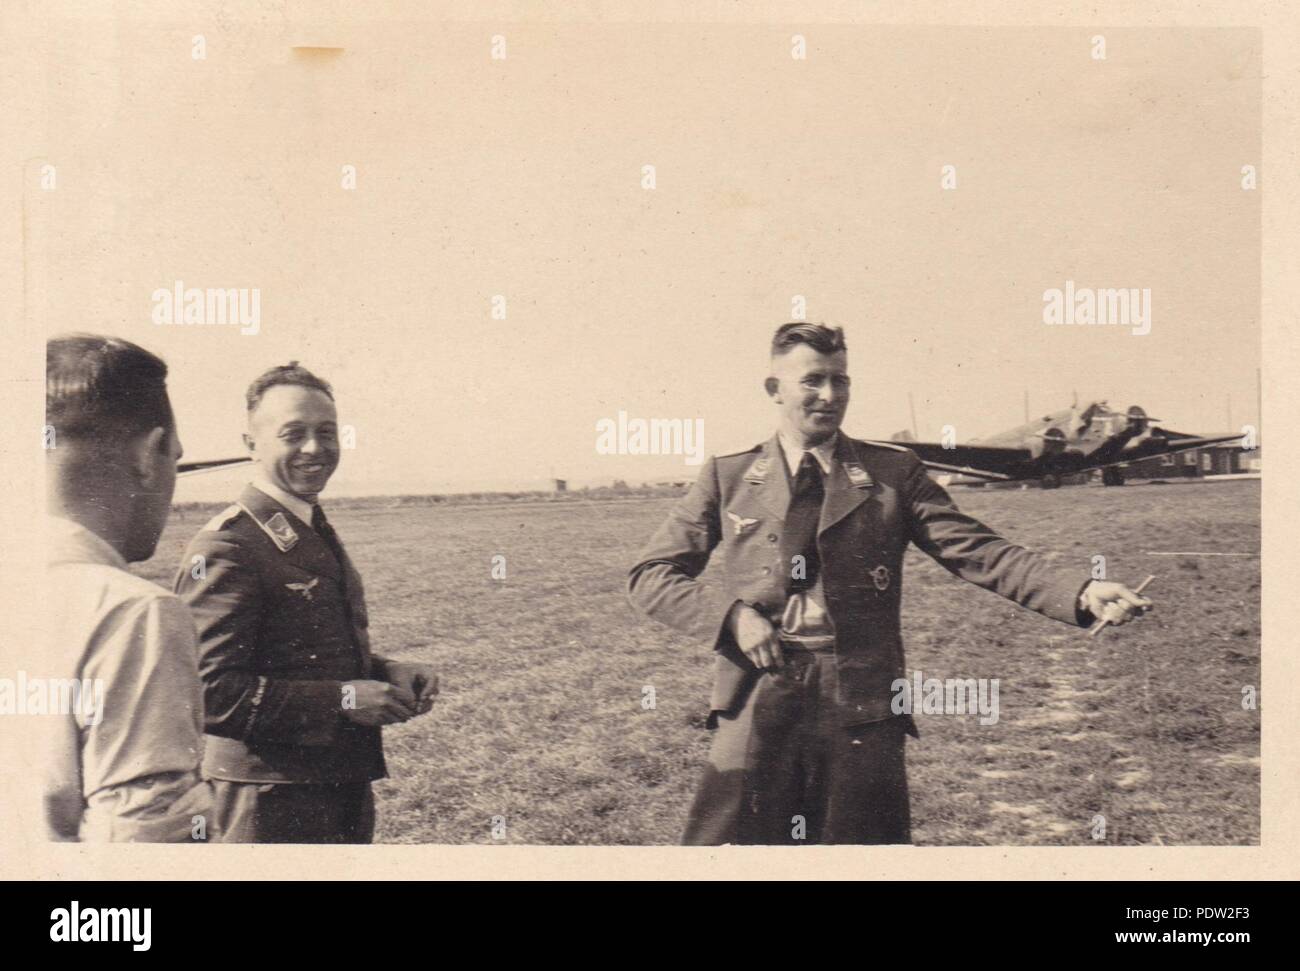 Bild aus dem Fotoalbum von Oberfeldwebel Karl gendner von 1. Staffel, Kampfgeschwader 40: Oberleutnant Leo Drengk, staffelkapitän 3./KGzbV 9, Gespräche zu anderen Luftwaffe Offiziere an Lüben Flugplatz in Ostdeutschland während der Polen Kampagne im September 1939. Eine Reihe von Junkers Ju 52/3 m Transportflugzeug der 3./KGzbV 9 im Hintergrund gesehen werden kann. Stockfoto